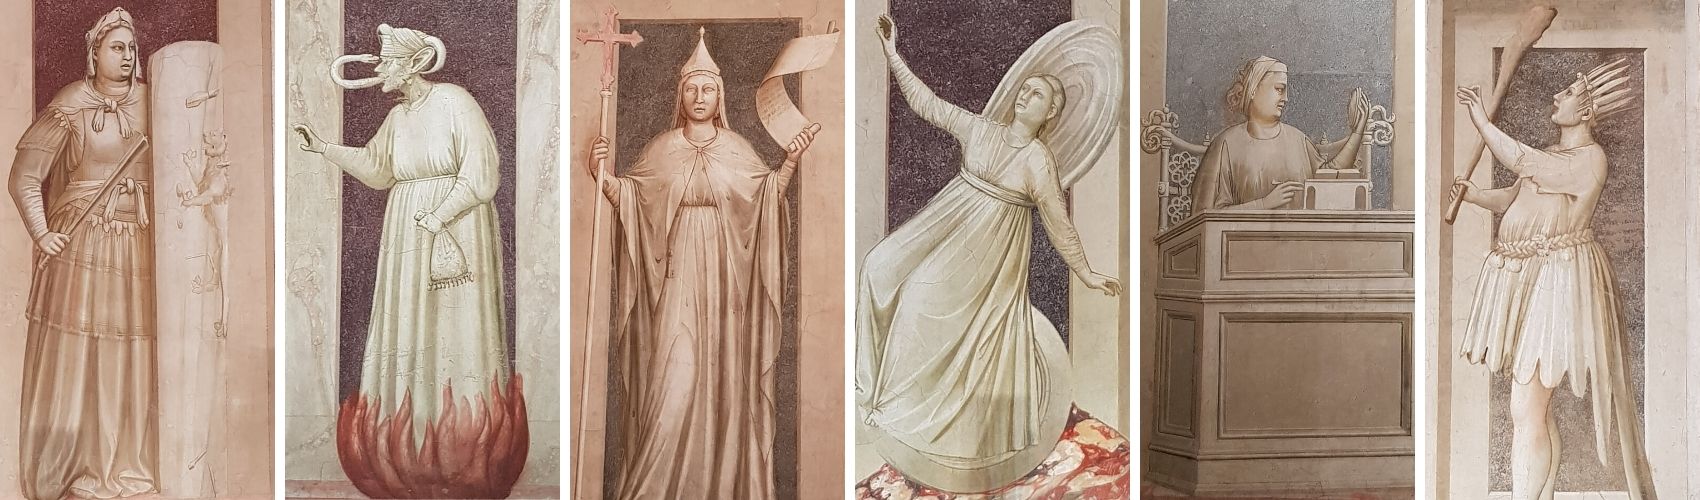 Virtù e Vizi di Giotto